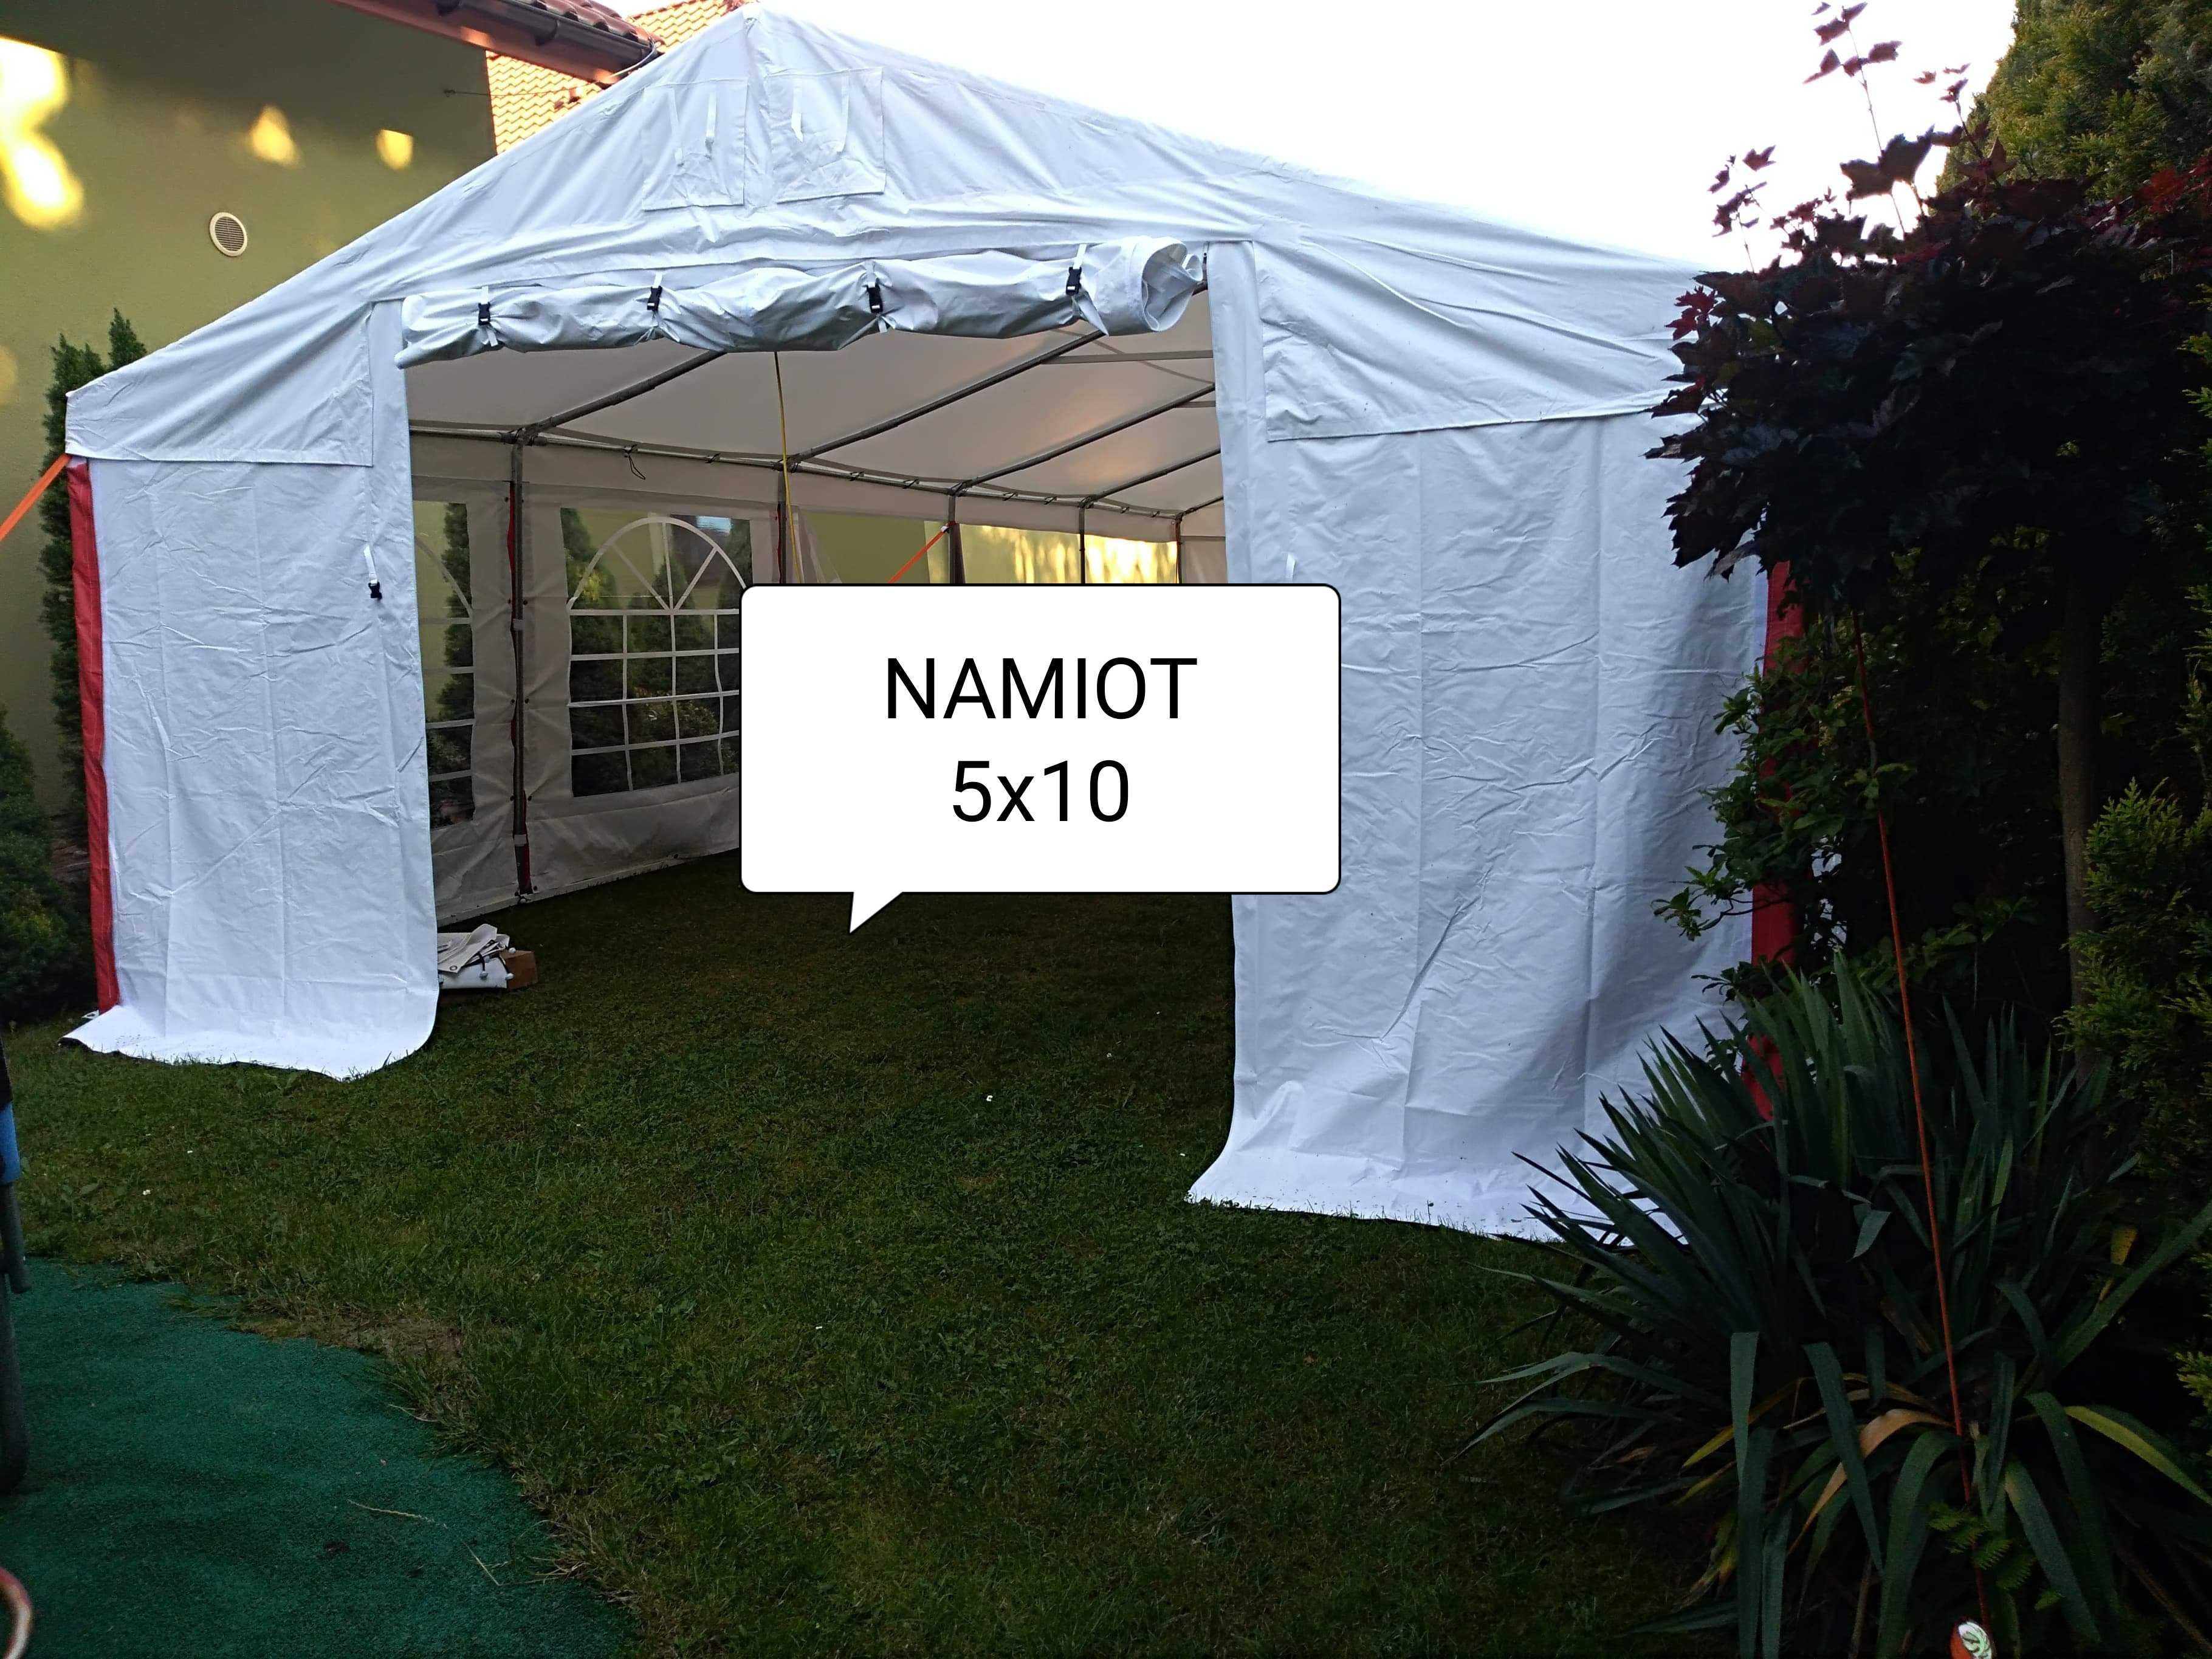 Namiot eventowy 5x10 6x12 wynajem ławy biesiadne stołki atrakcje